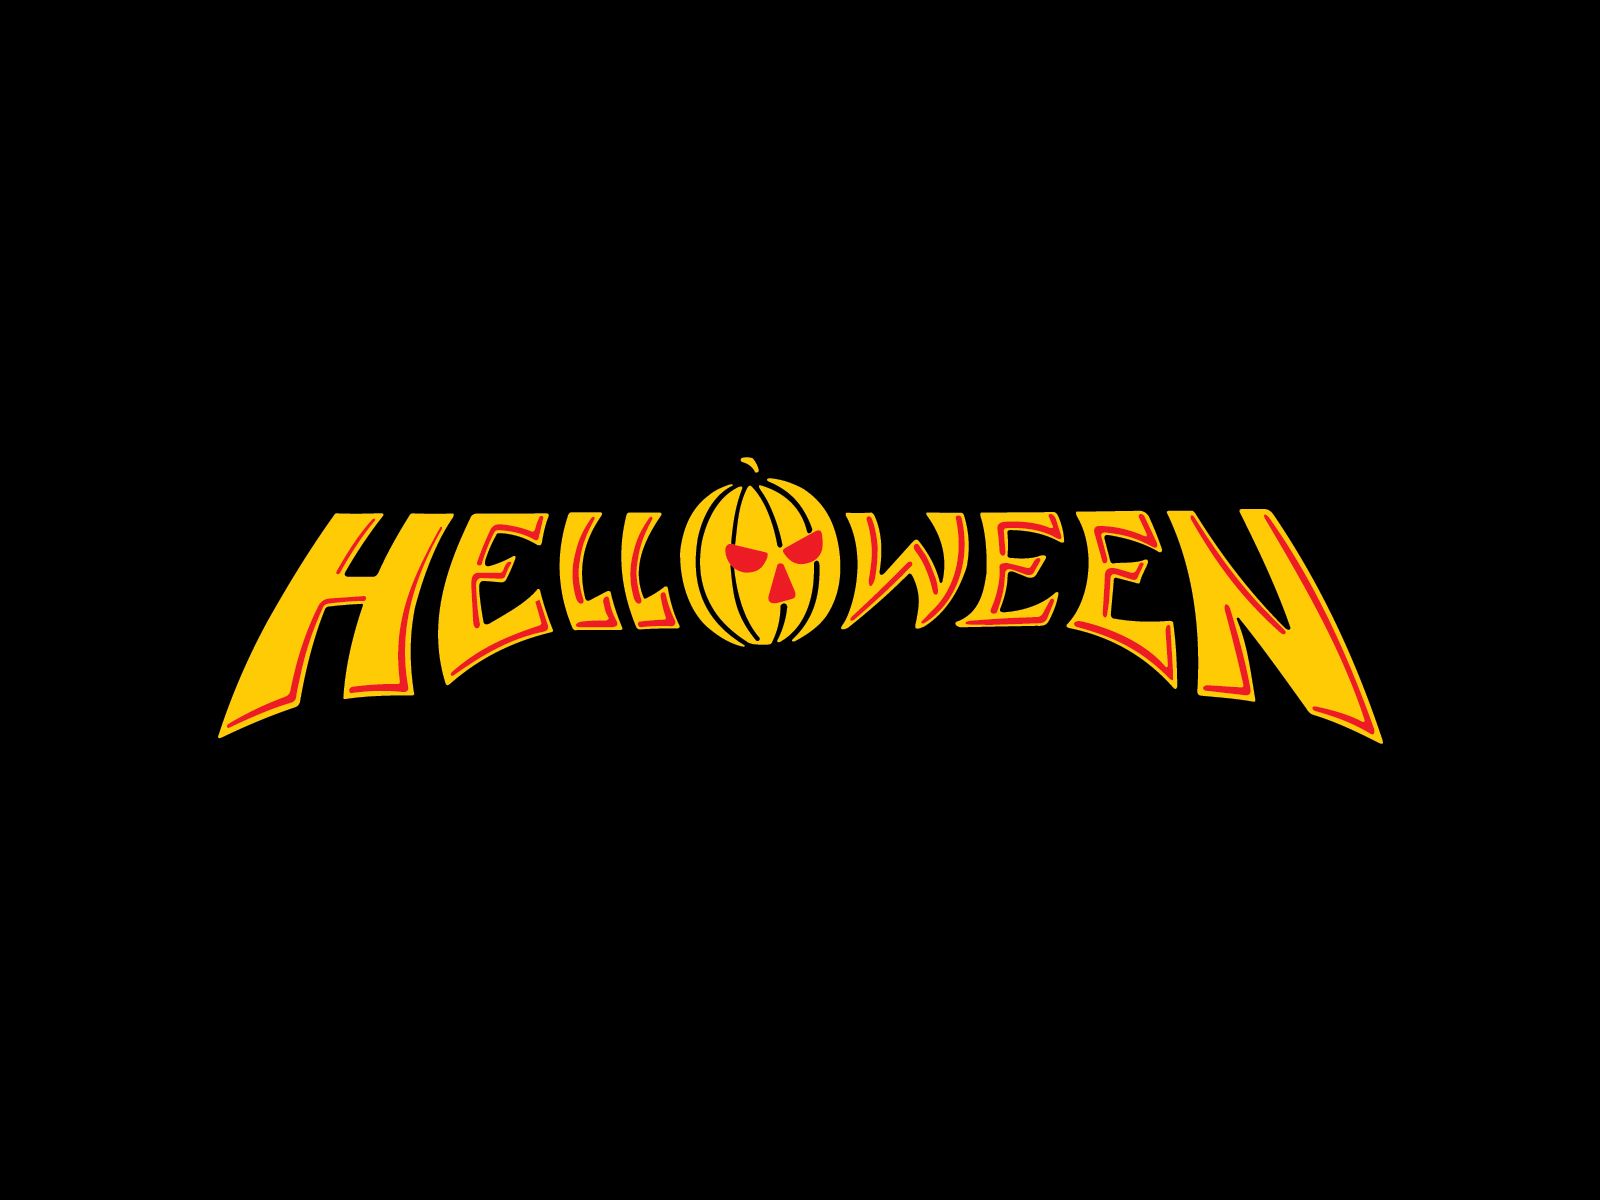 Helloween logo wallpaper. Metal band logos, Metallic logo, Band wallpaper